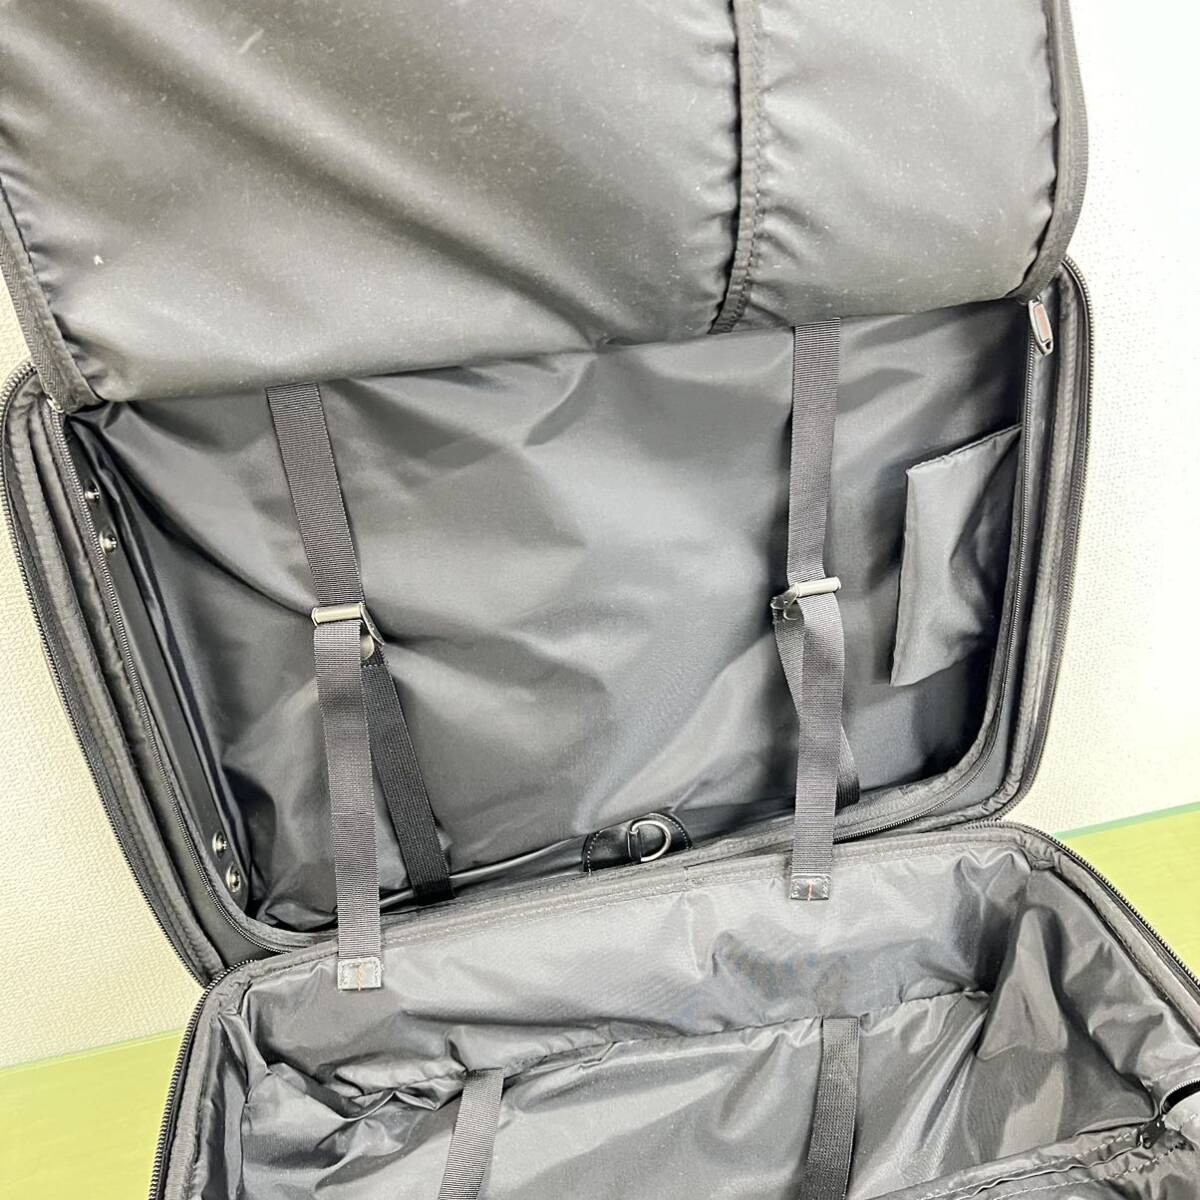 # Samsonite Samsonite Carry case suitcase carry bag black 